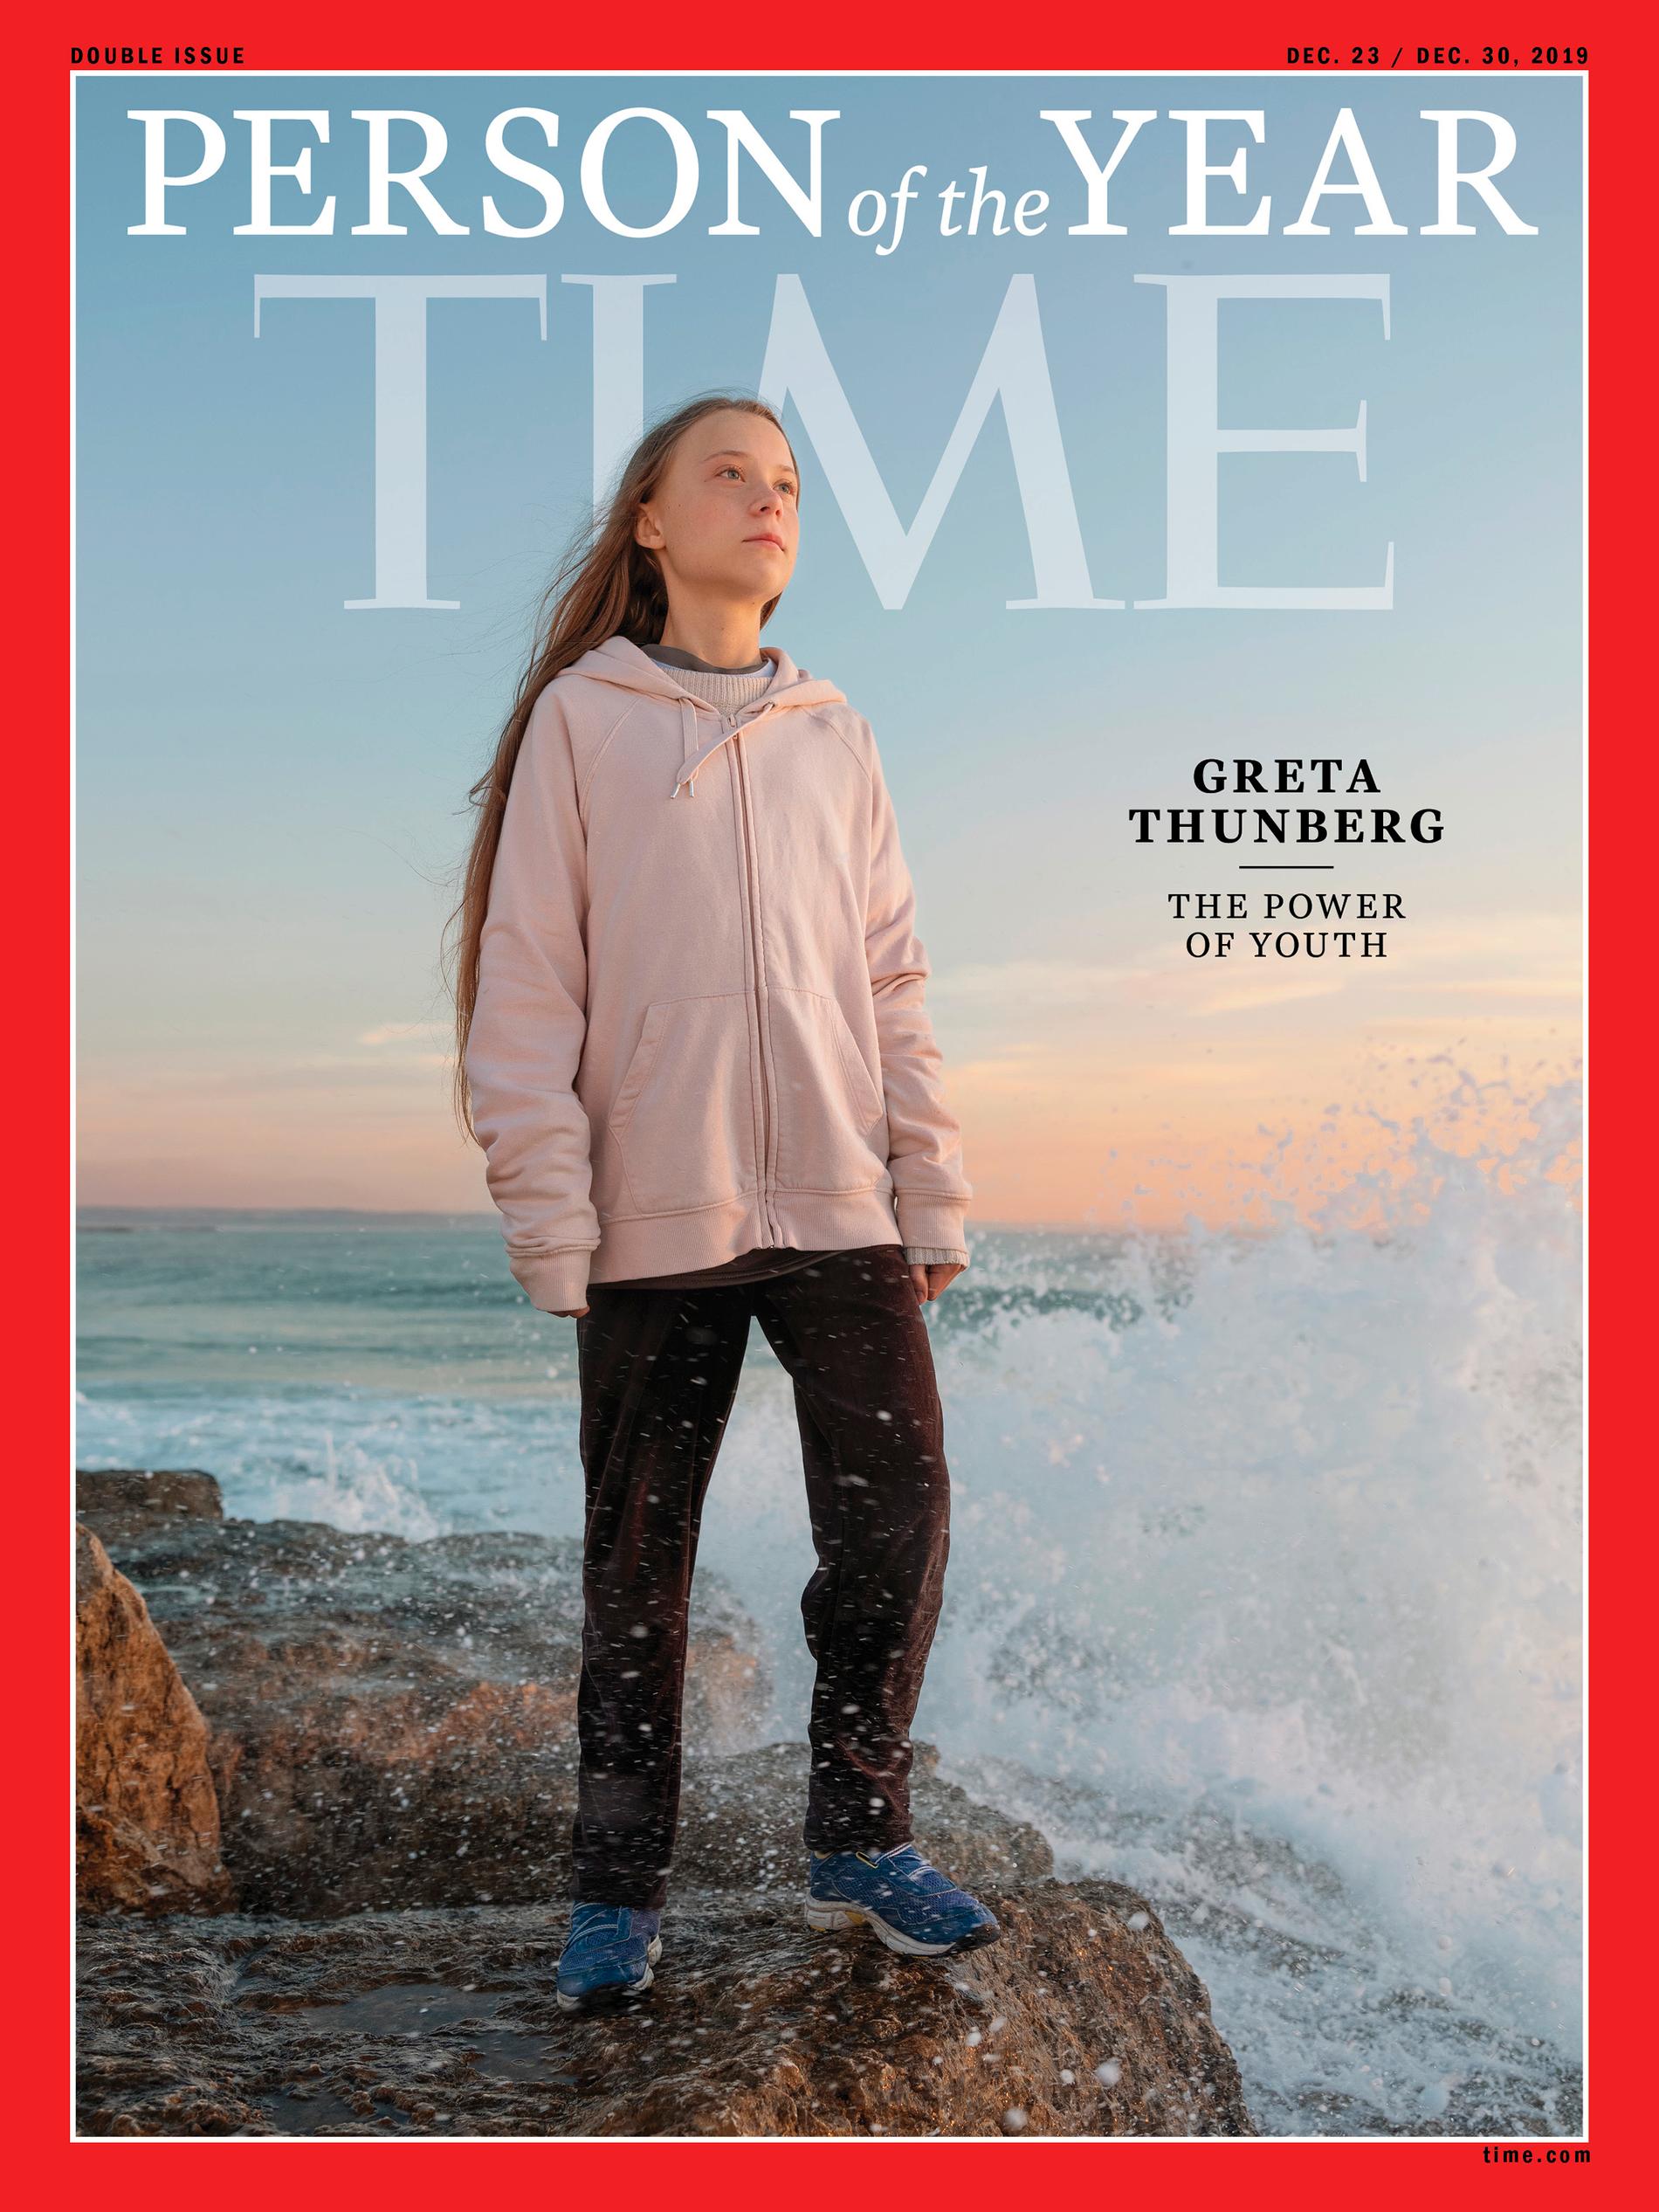 Greta Thunberg utsågs till årets person av Time 2019.